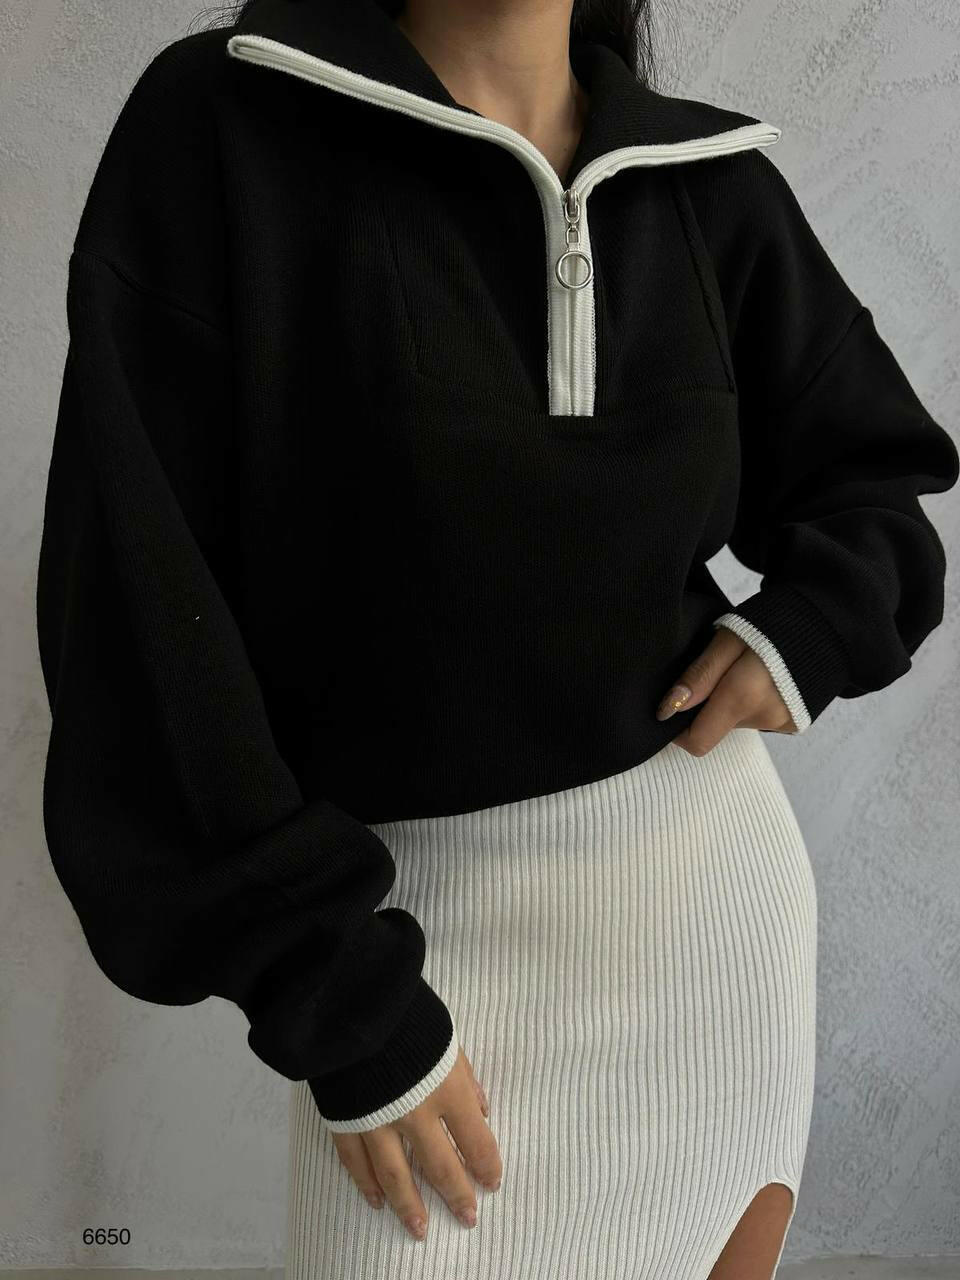 Collar Sweater in Black - Noxlook